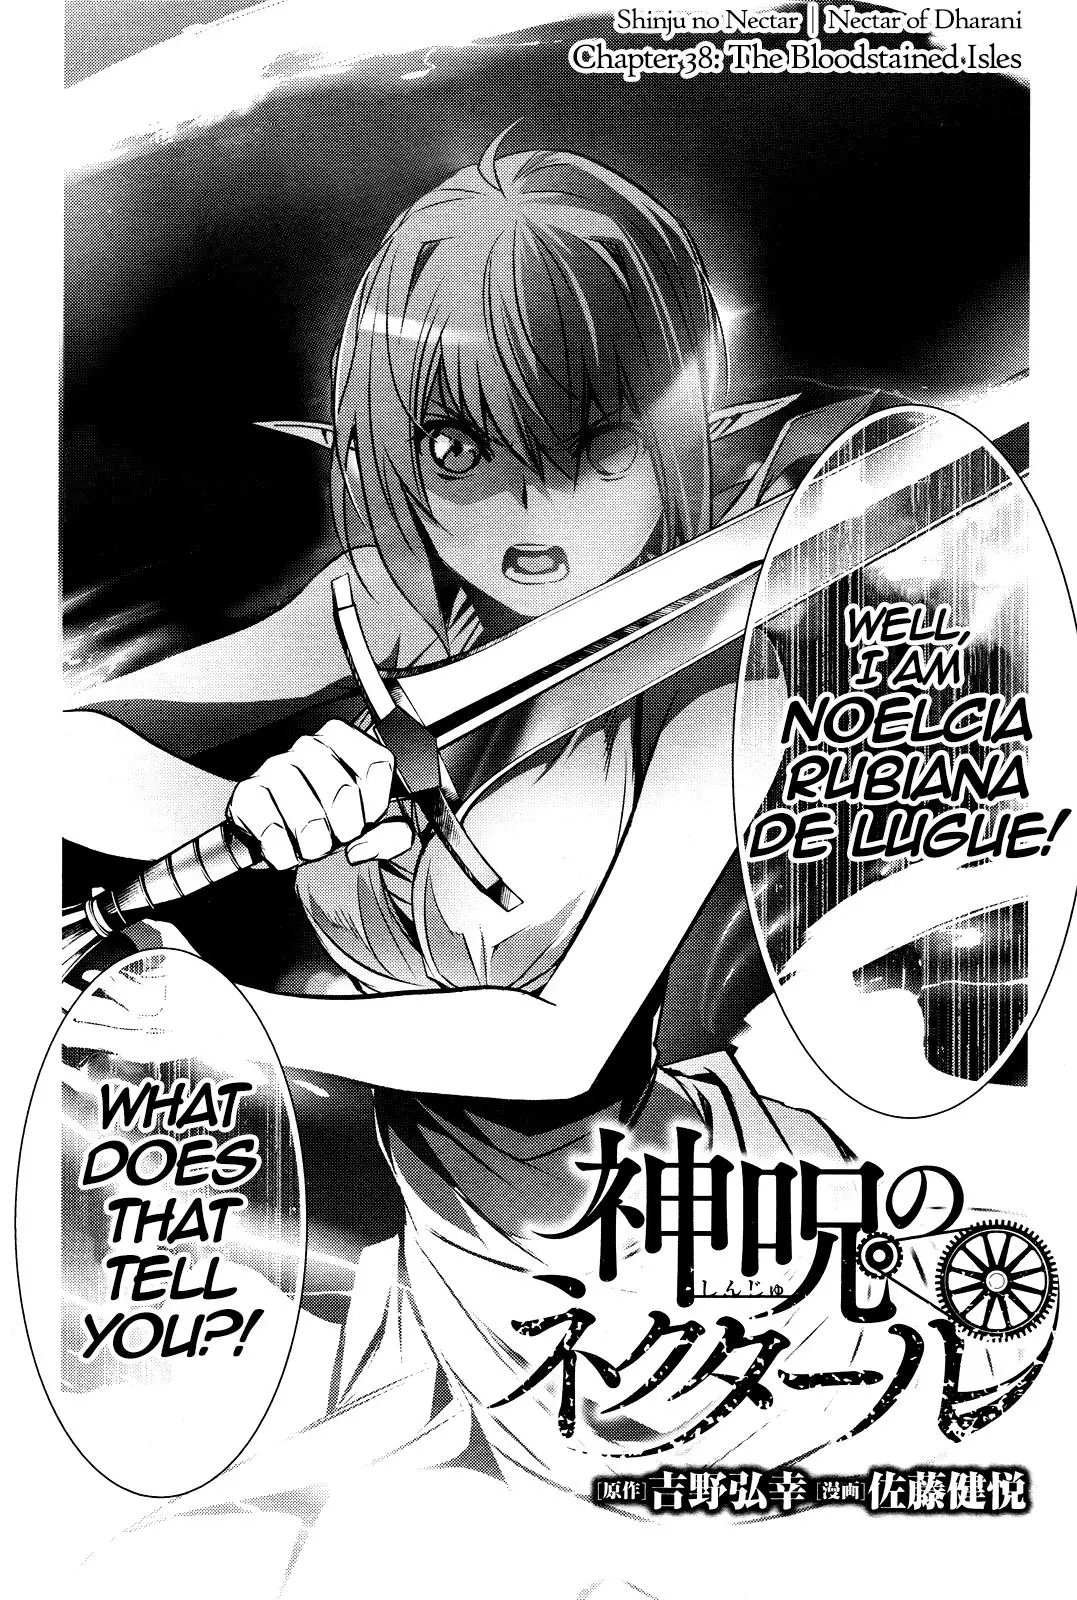 Shinju no Nectar - 38 page 2